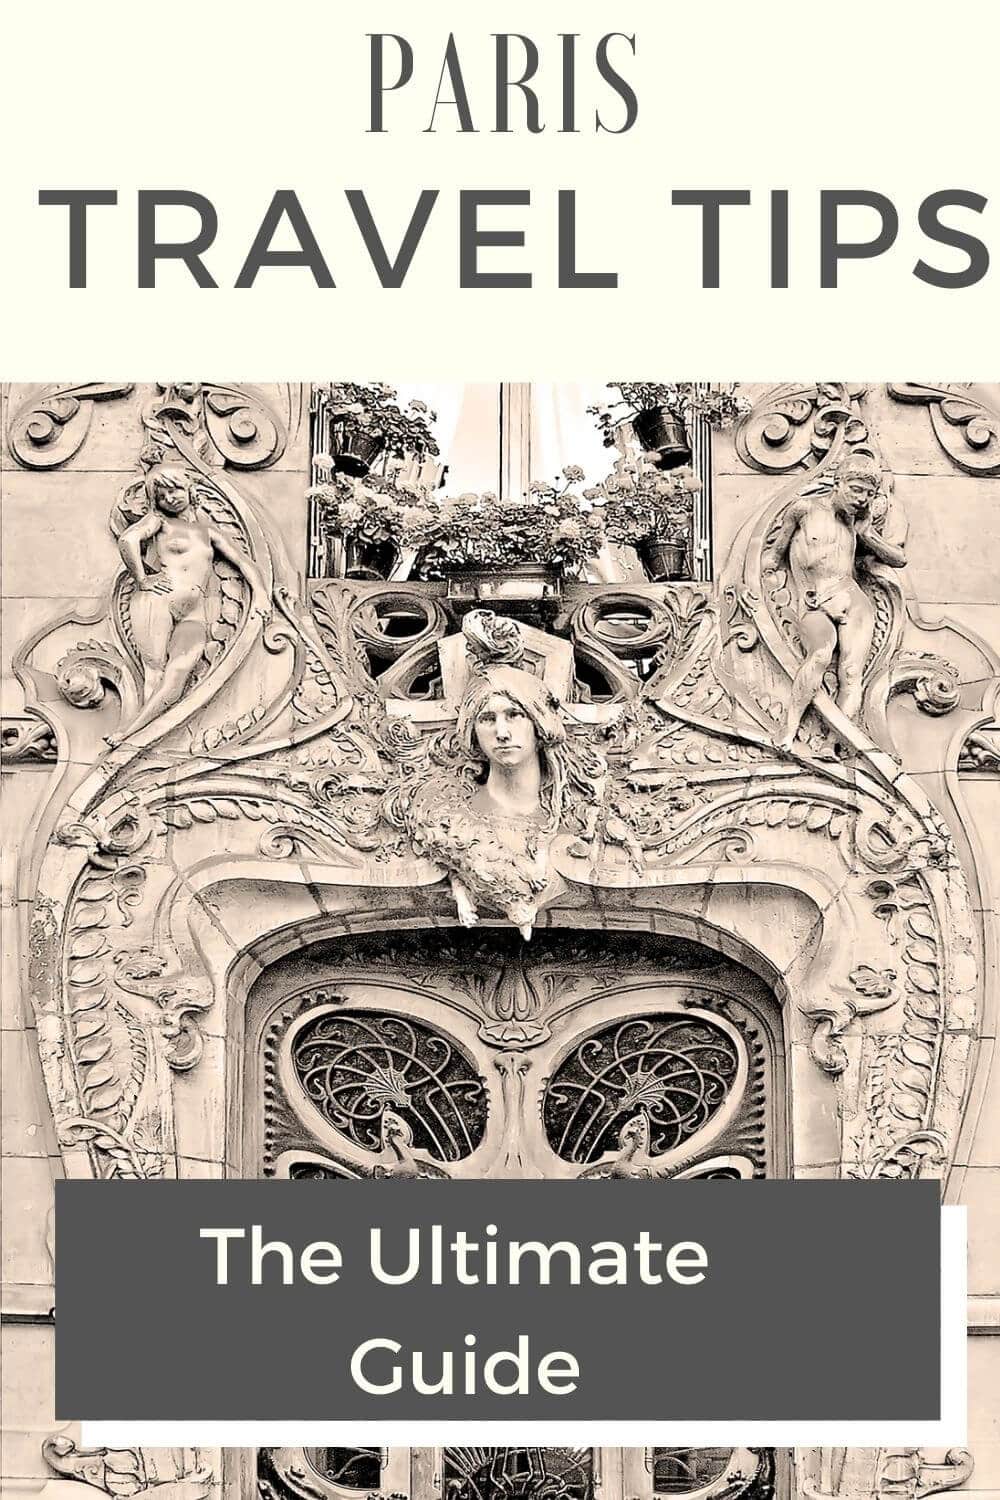 paris travel tips pinterest image with art nouveau building